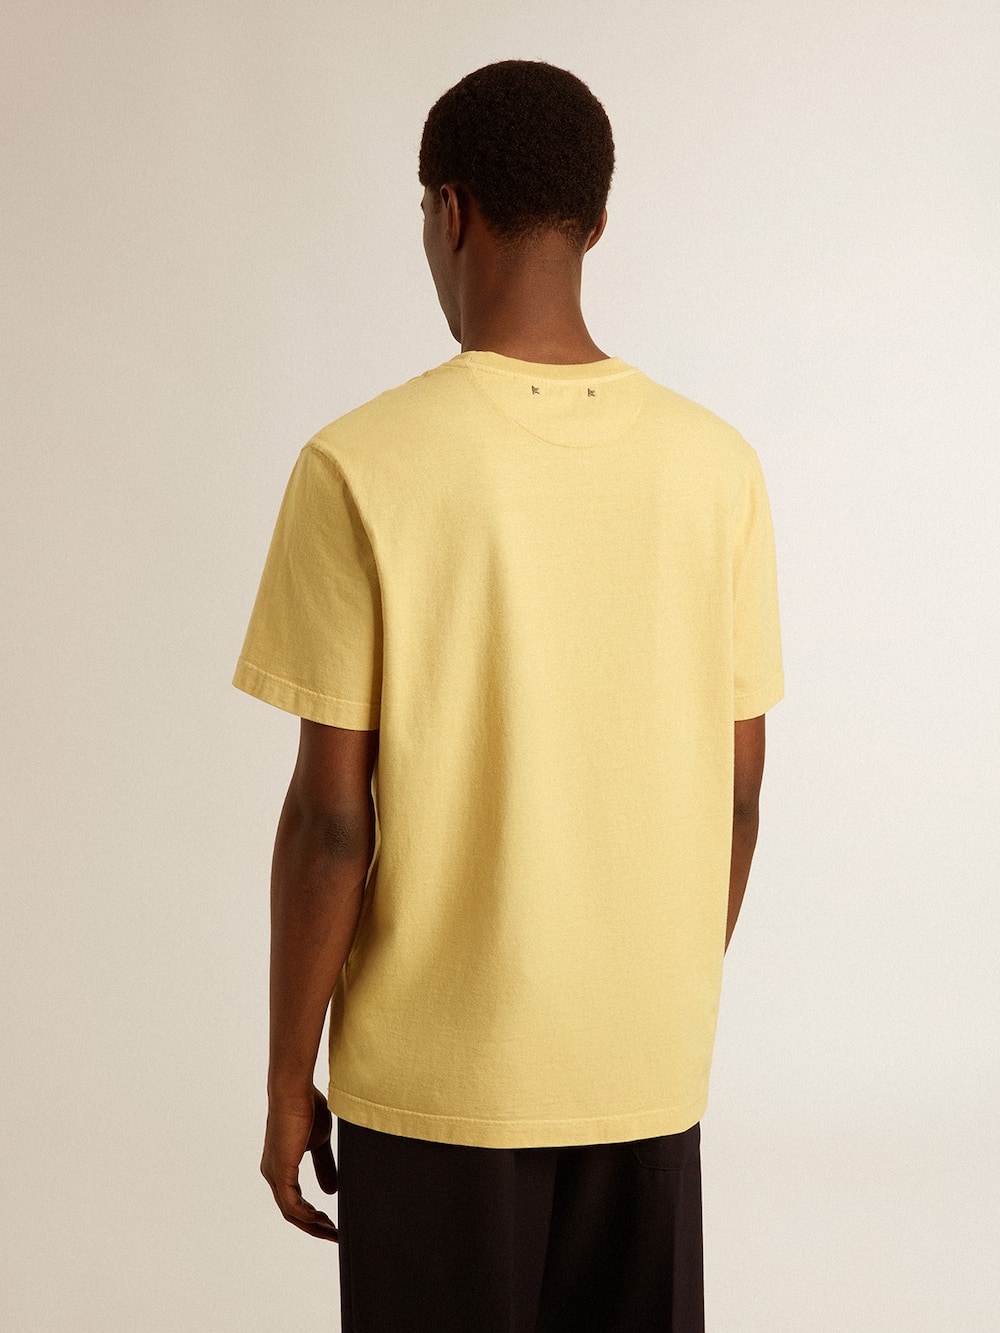 Golden Goose - T-shirt homme en coton jaune pâle avec inscription décolorée in 